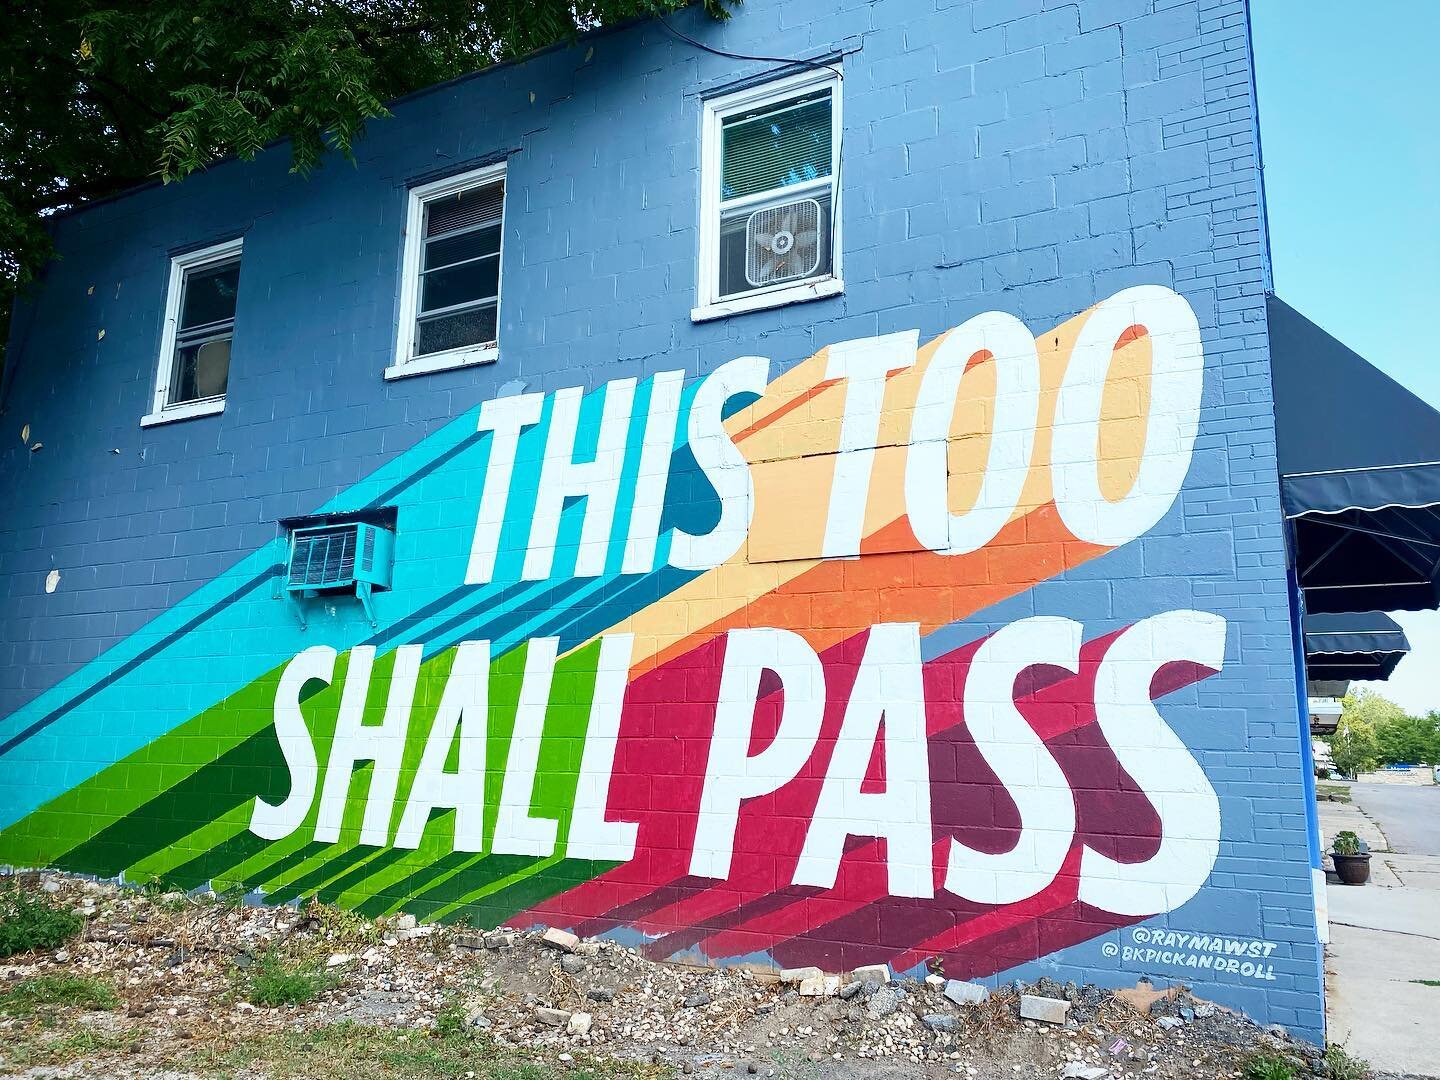 Neighborhood art update is on point #thistooshallpass